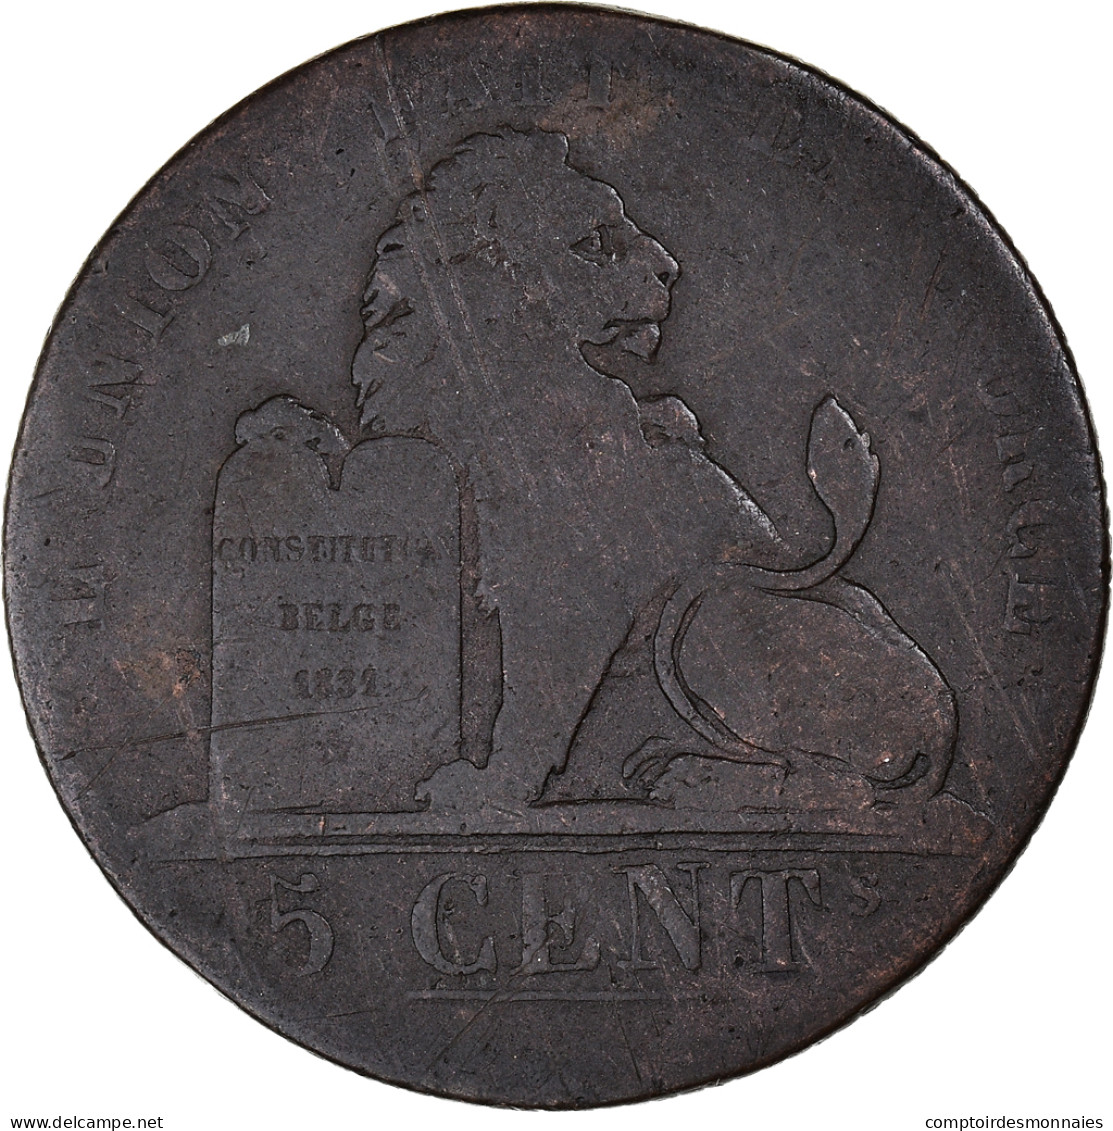 Monnaie, Belgique, Leopold I, 5 Centimes, 1837, Bruxelles, TB, Cuivre, KM:5.1 - 5 Cents